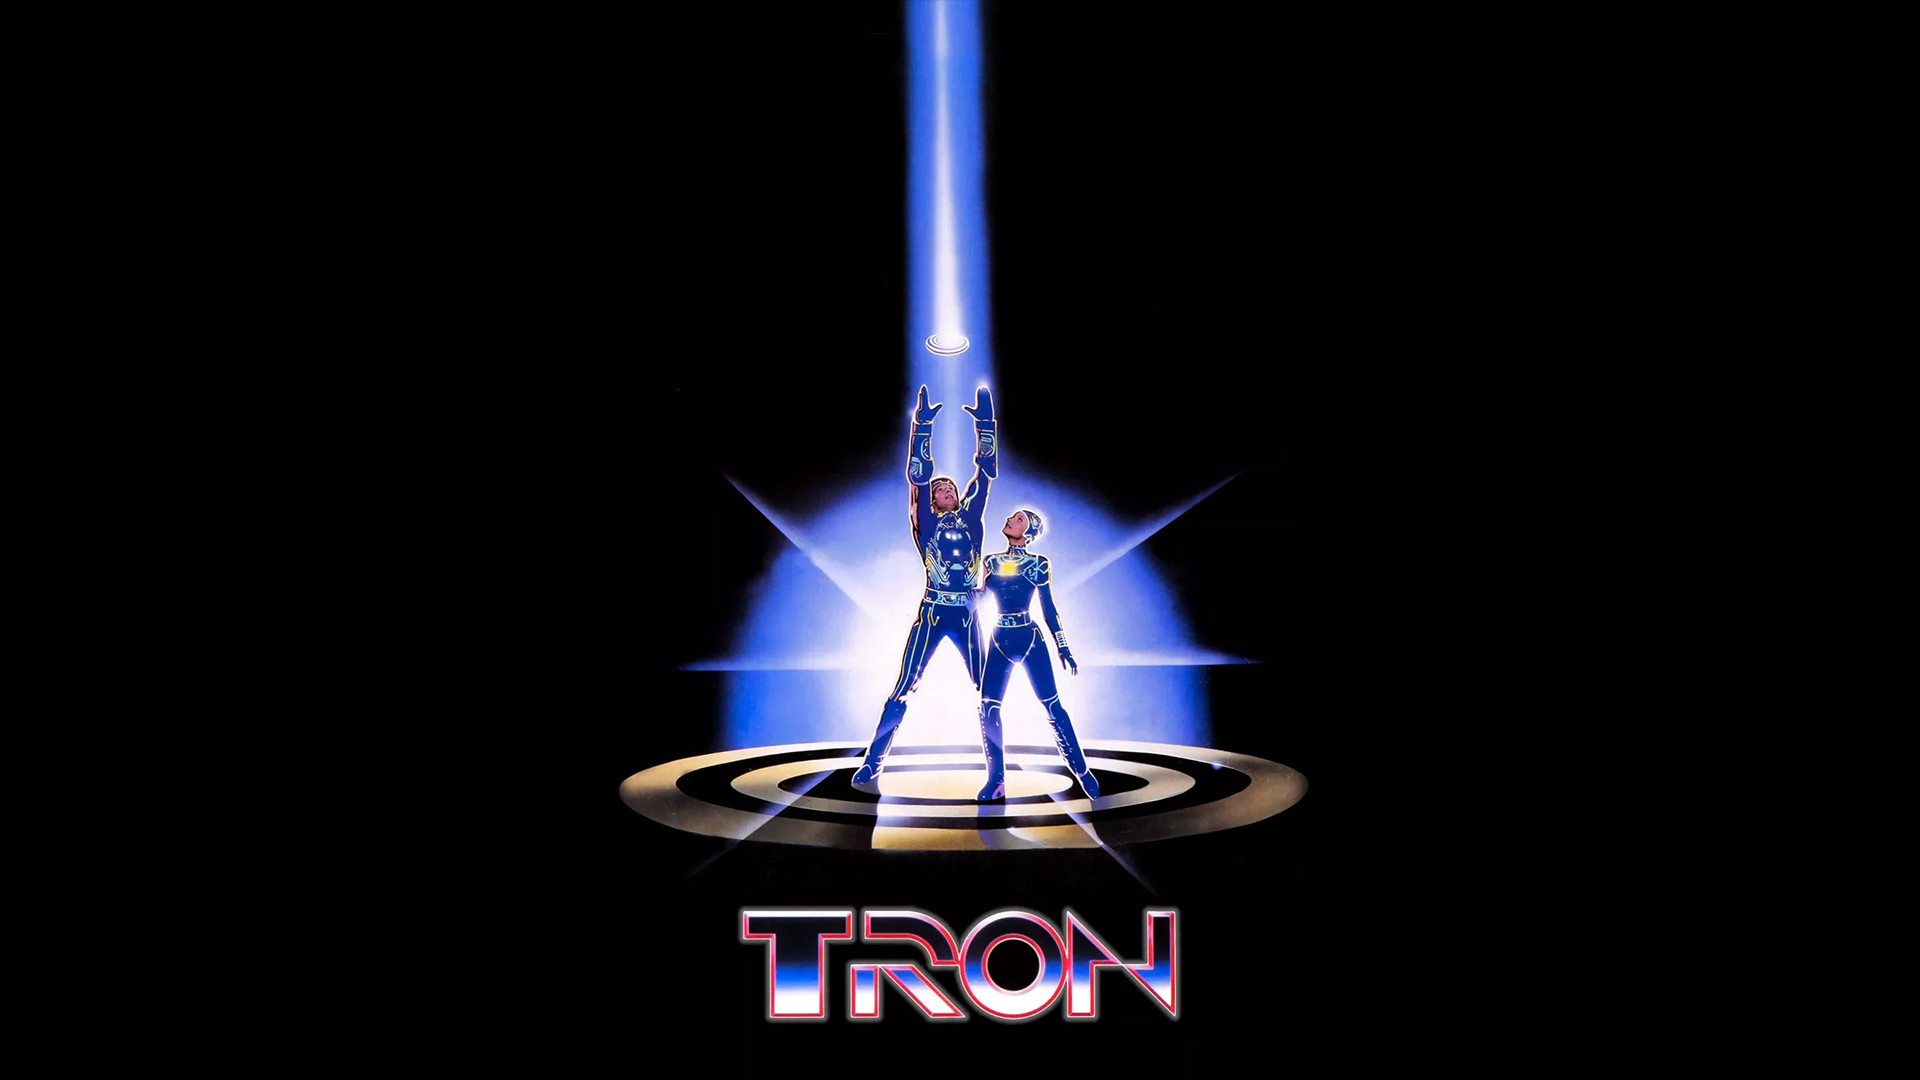 Tron: Maze-a-Tron